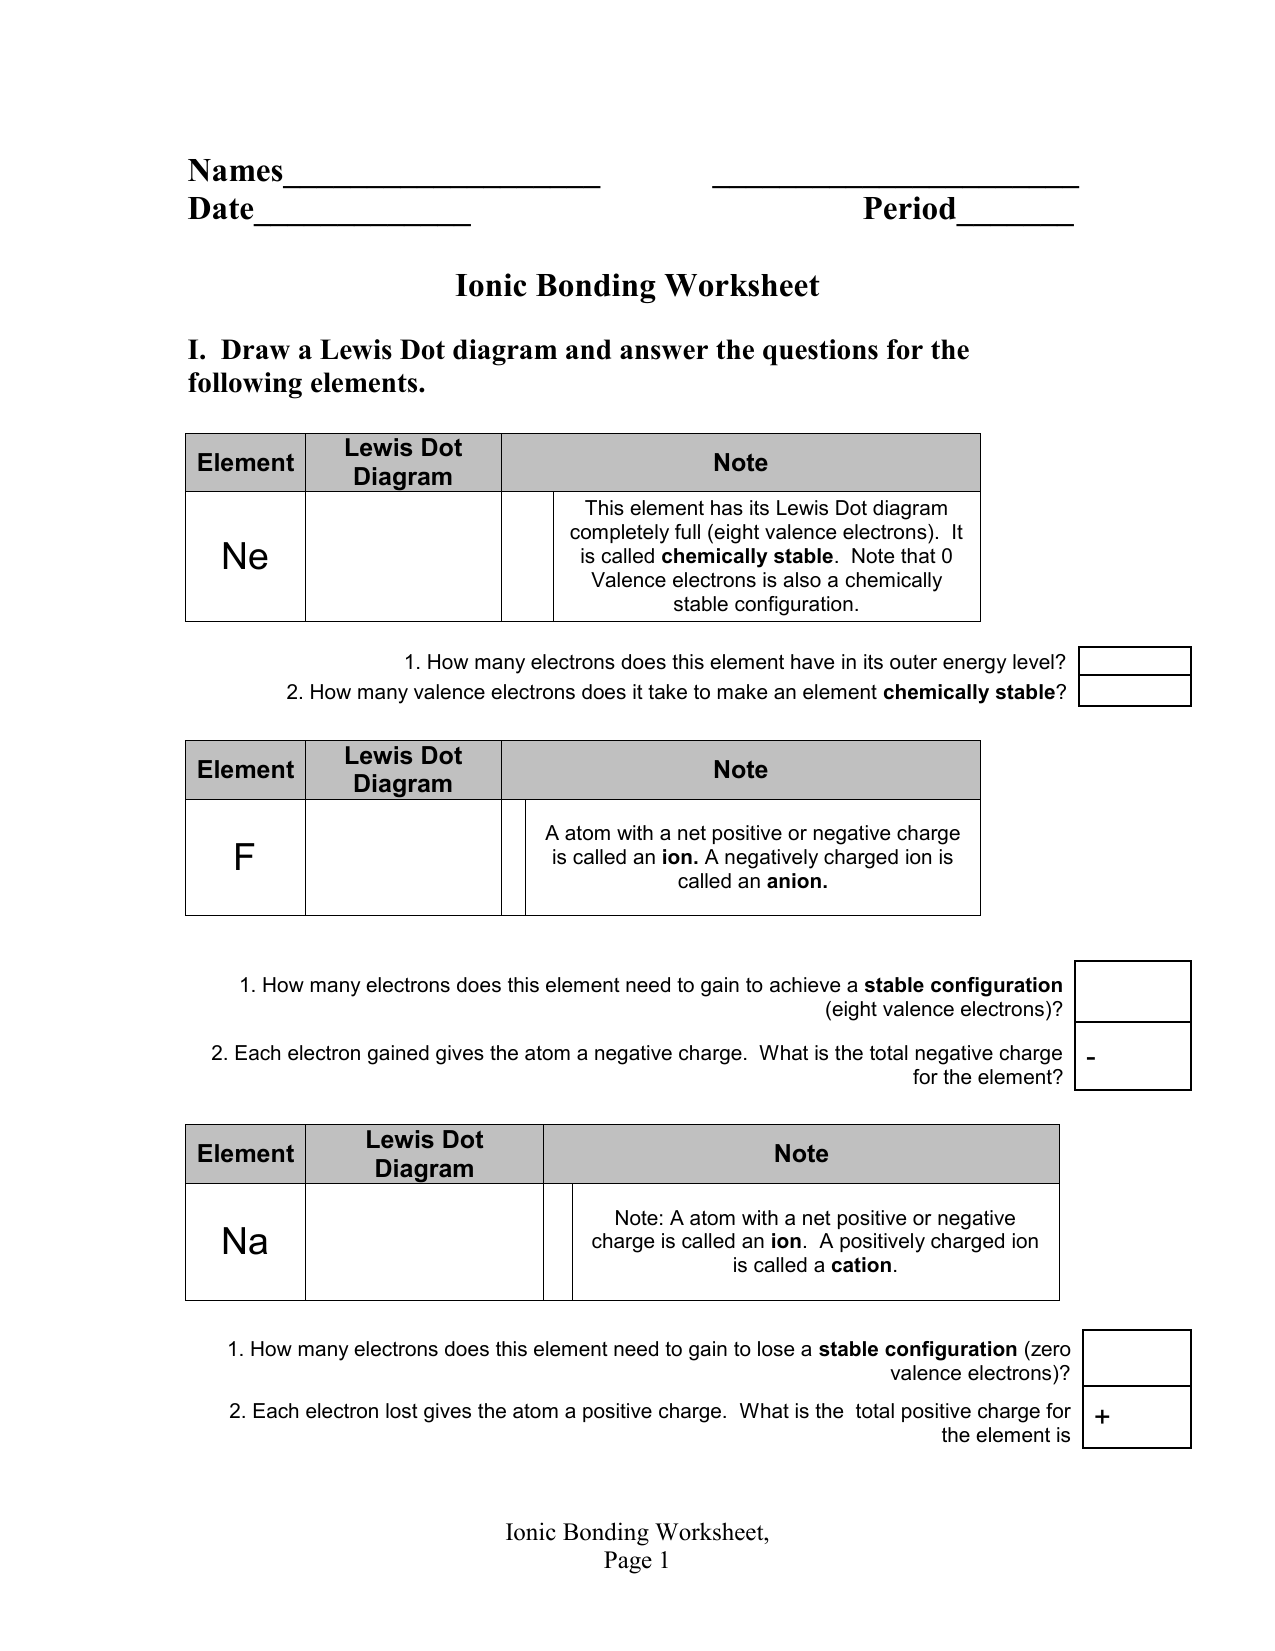 Ionic Bonding Worksheet With Regard To Ionic Bonding Worksheet Key